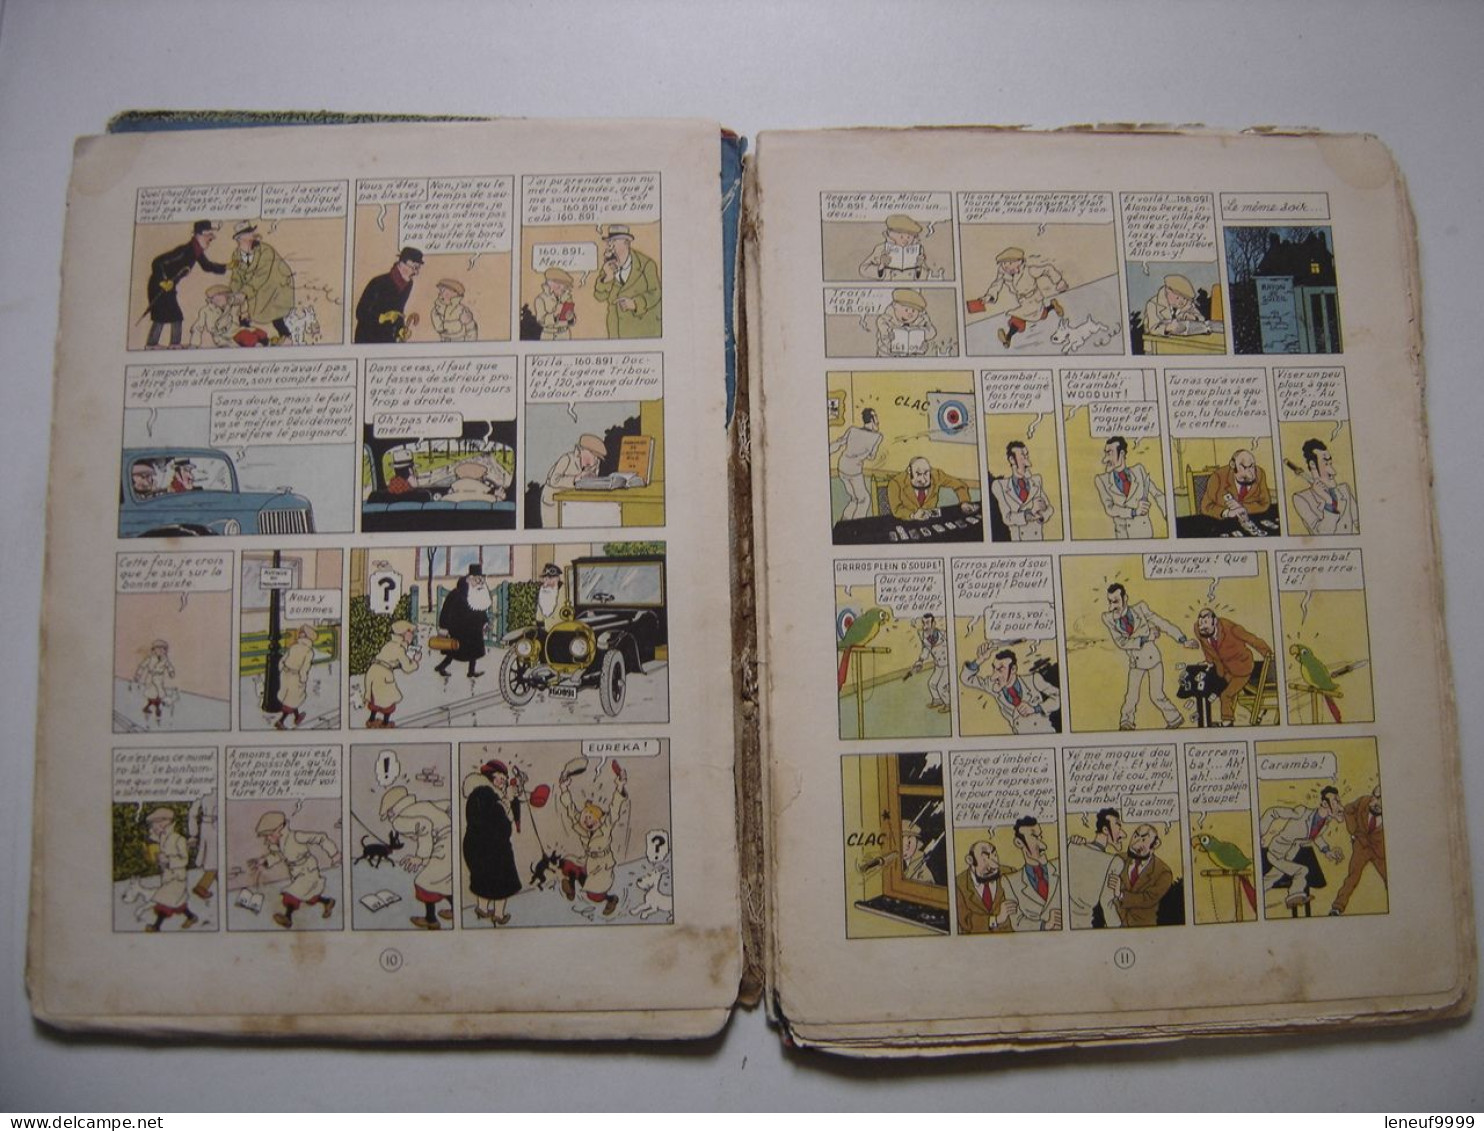 L'oreille cassee HERGE Les aventures de Tintin 1950 Casterman